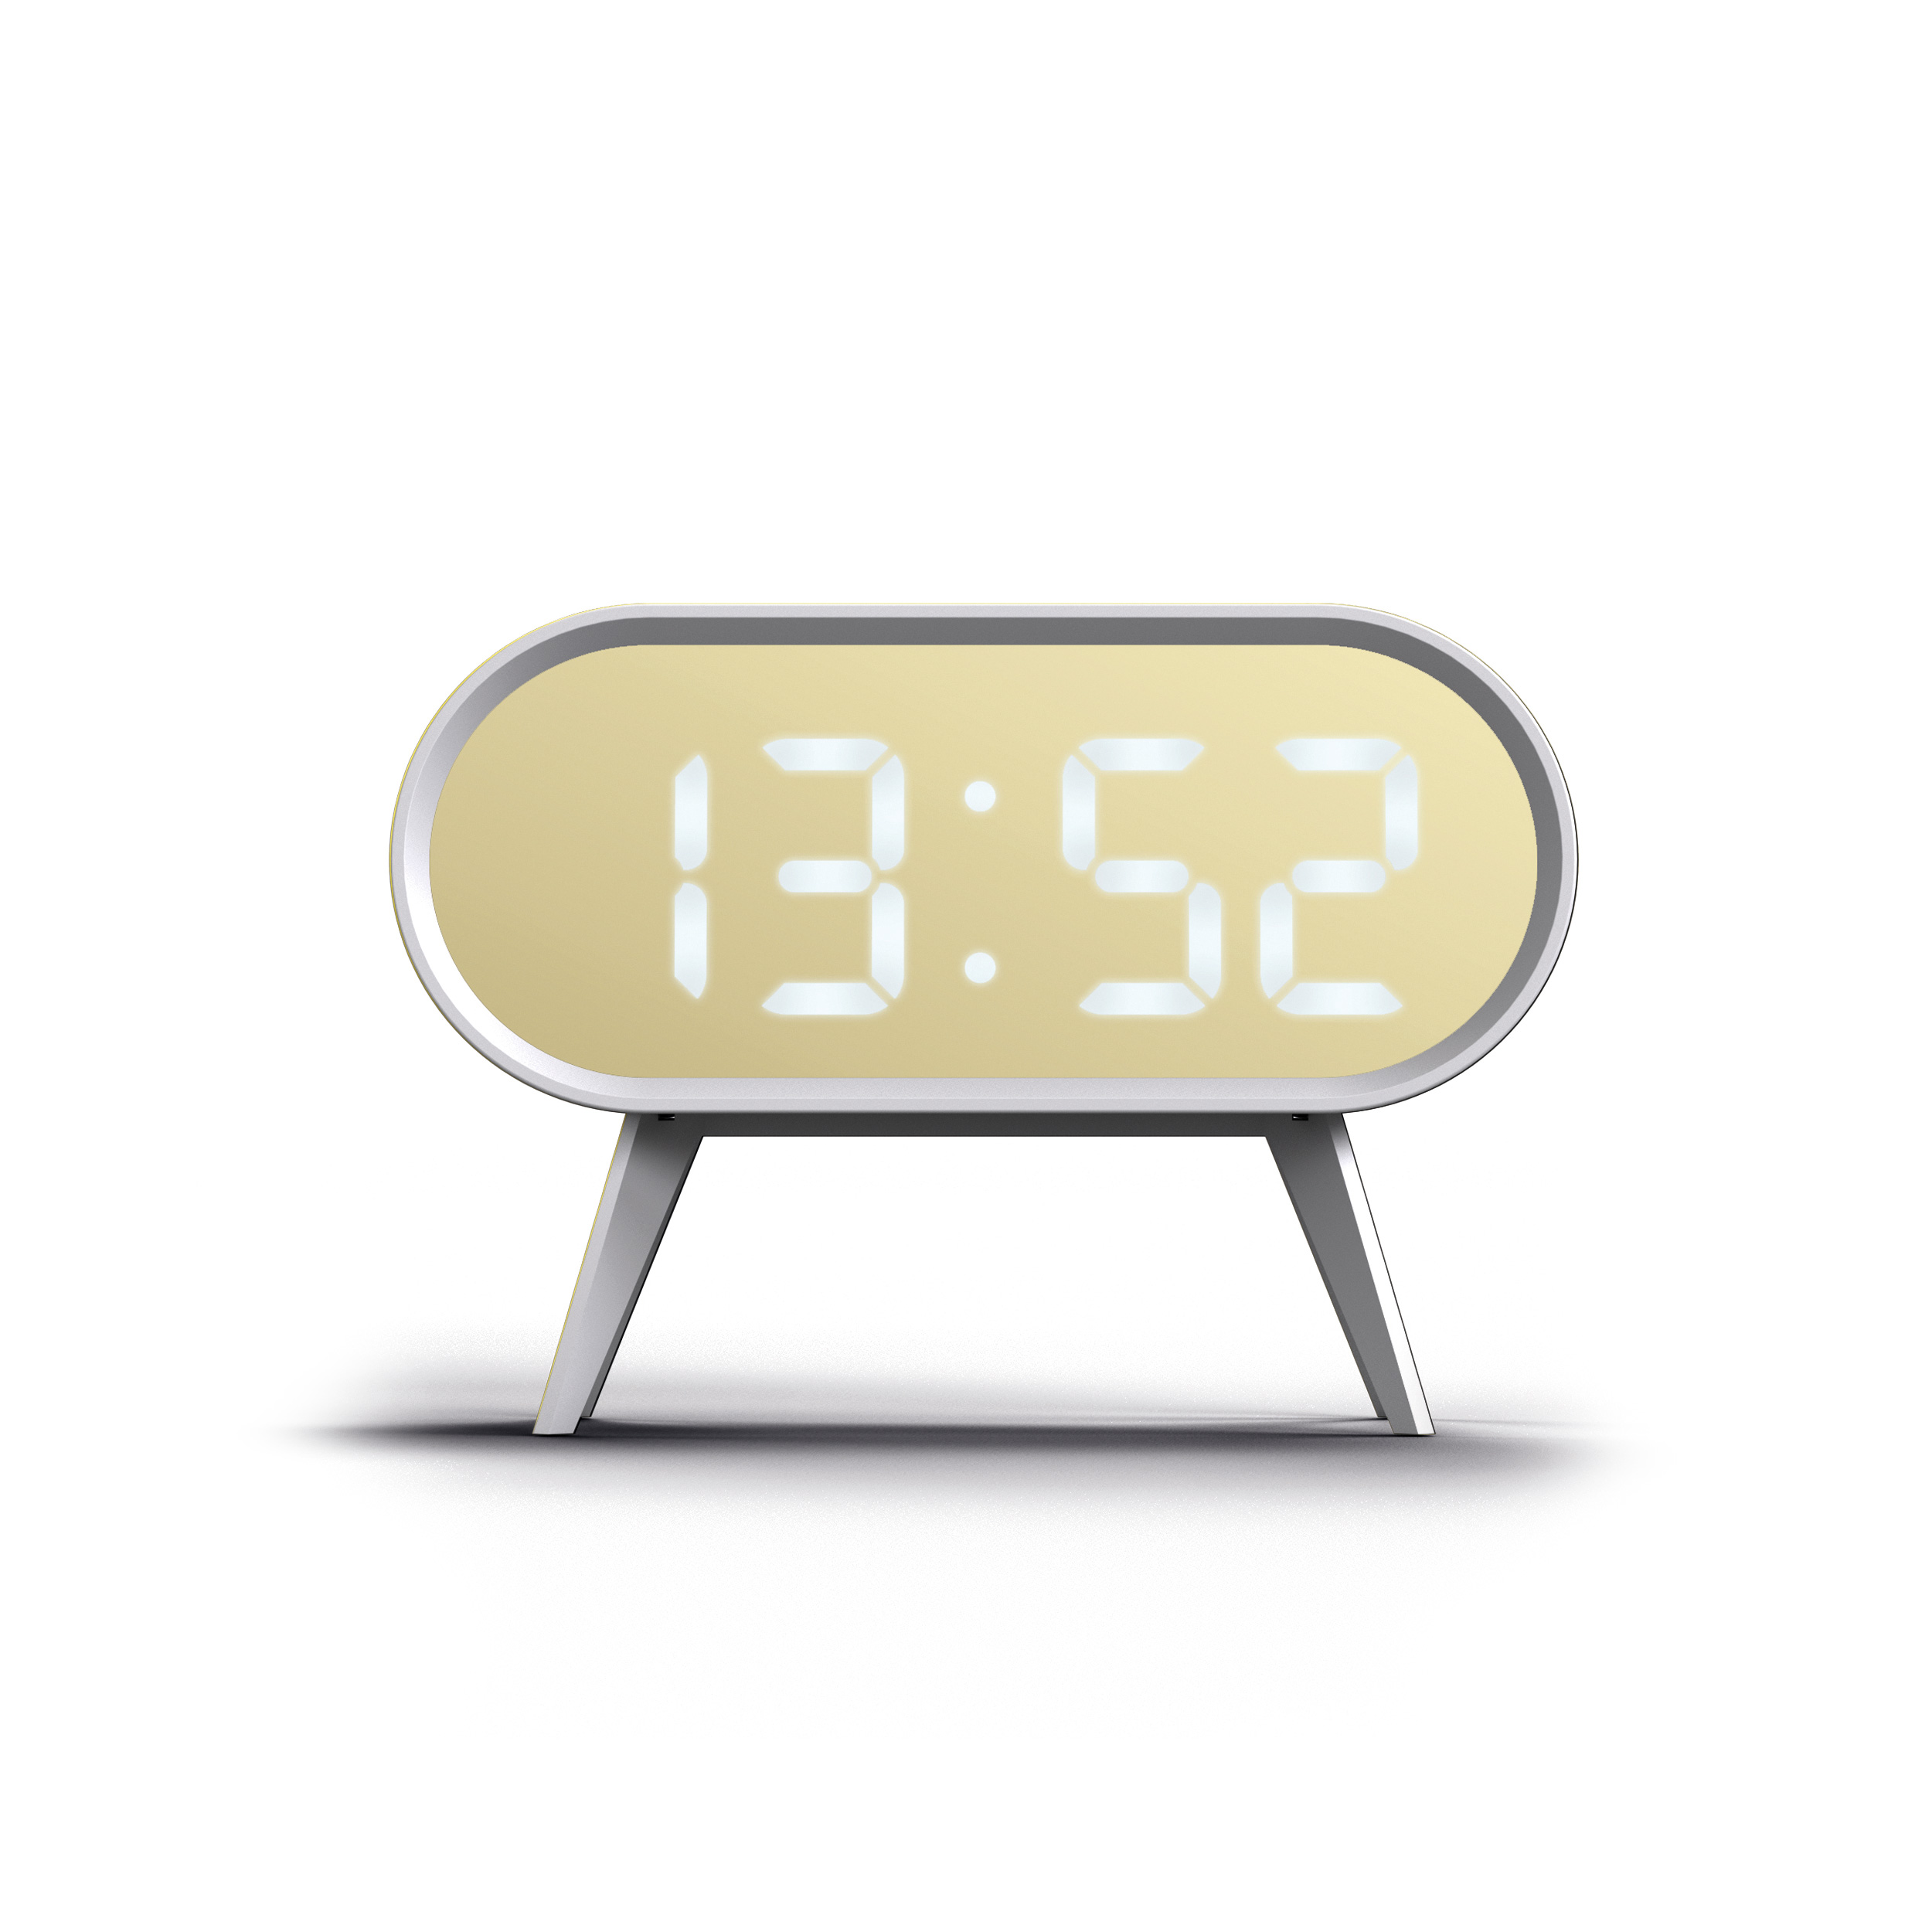 NEWGATE ’Cyborg Digital’ LED Clock White